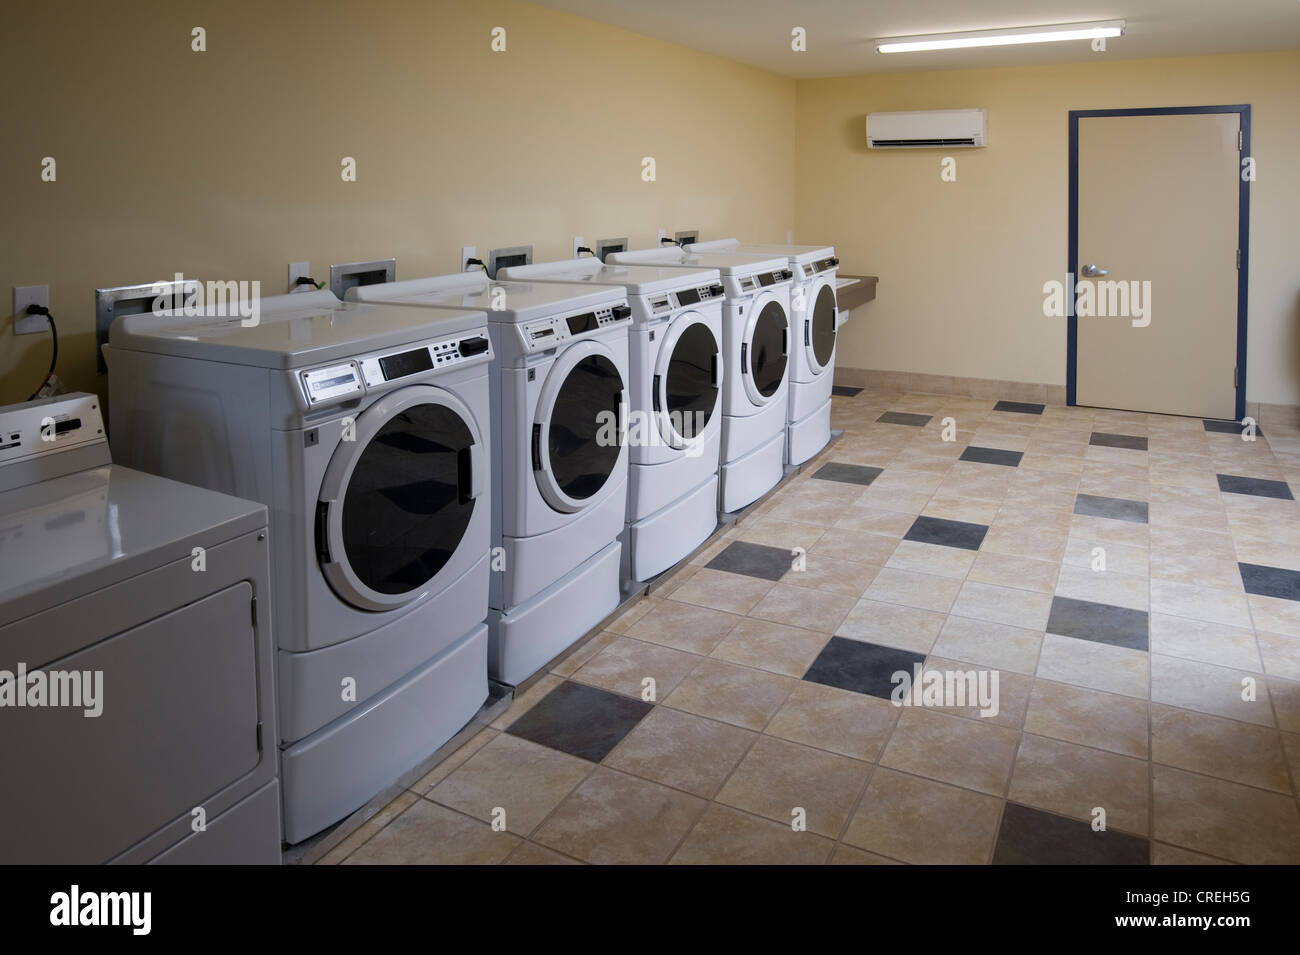 Washing Machines In Laundromat Laundrette, Philadelphia, USA Stock Photo